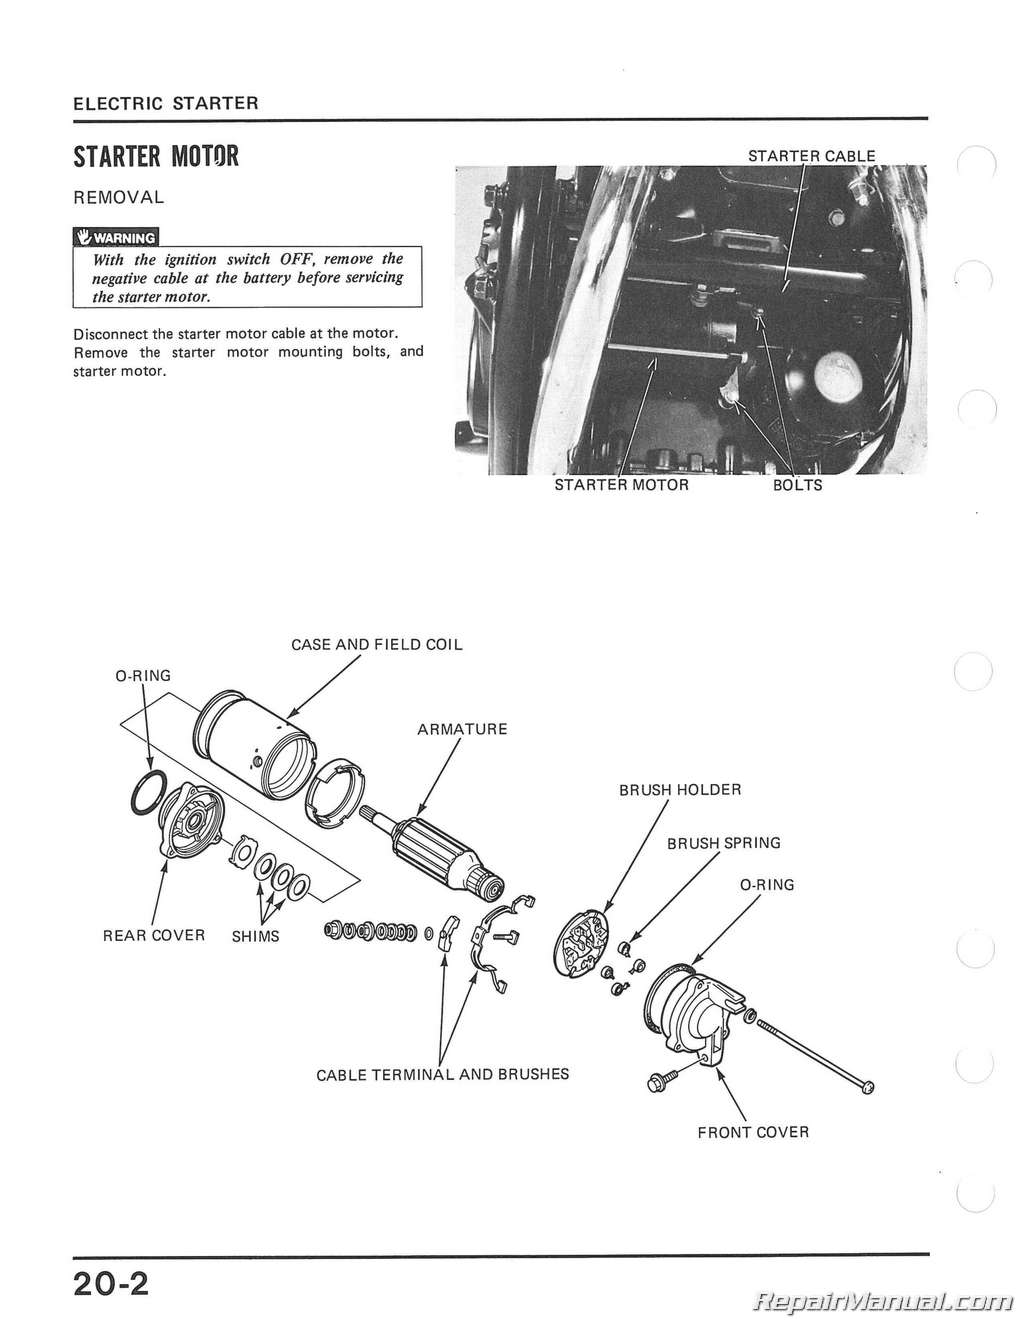 1984 Honda magna vf700c owners manual